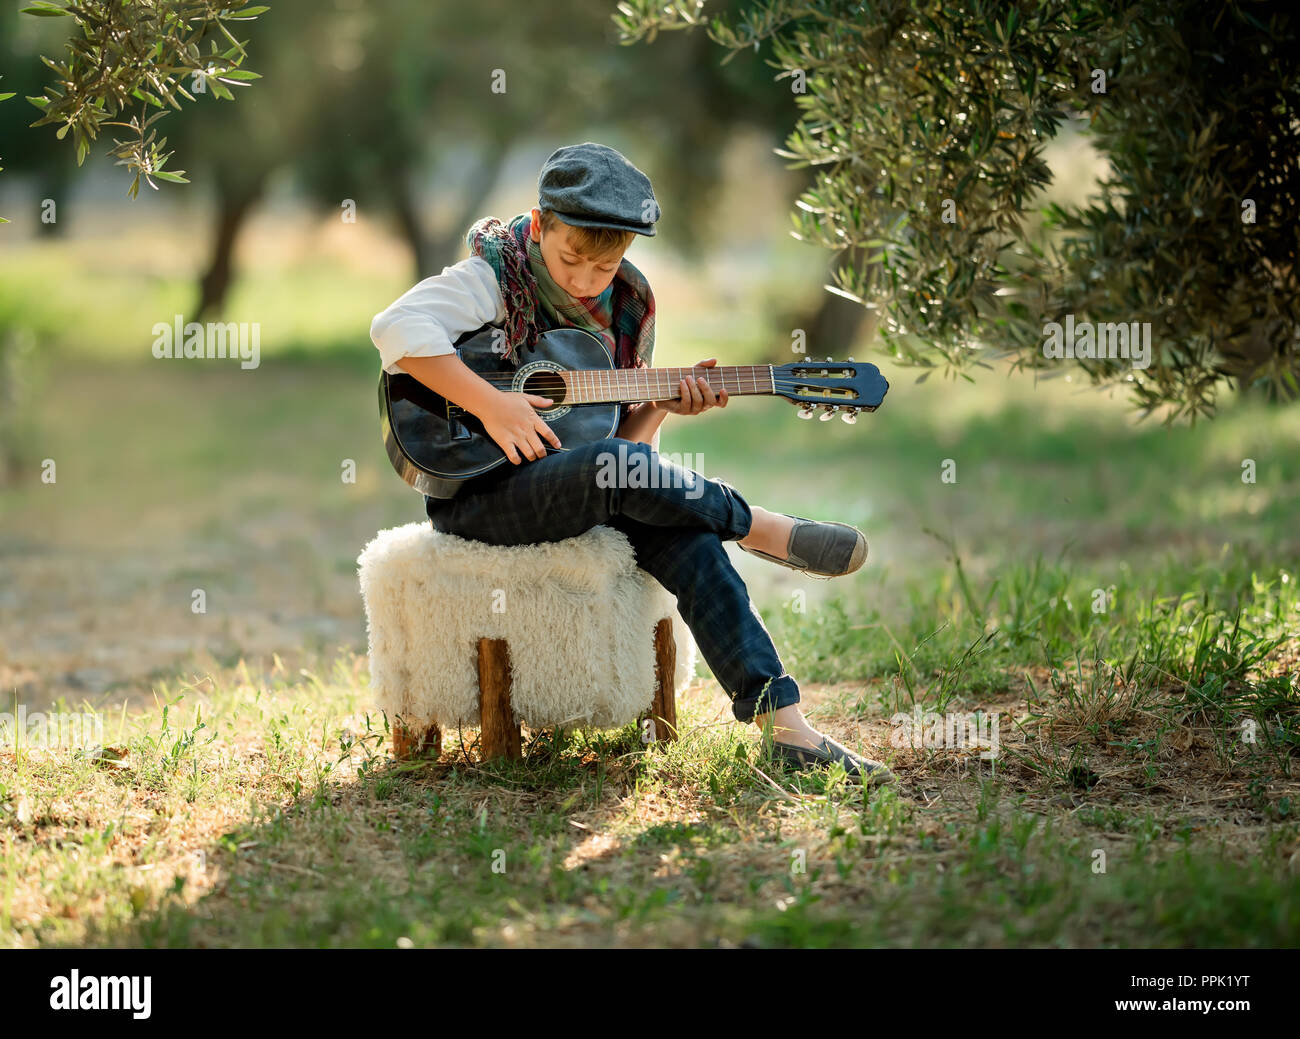 cute boy playing guitar